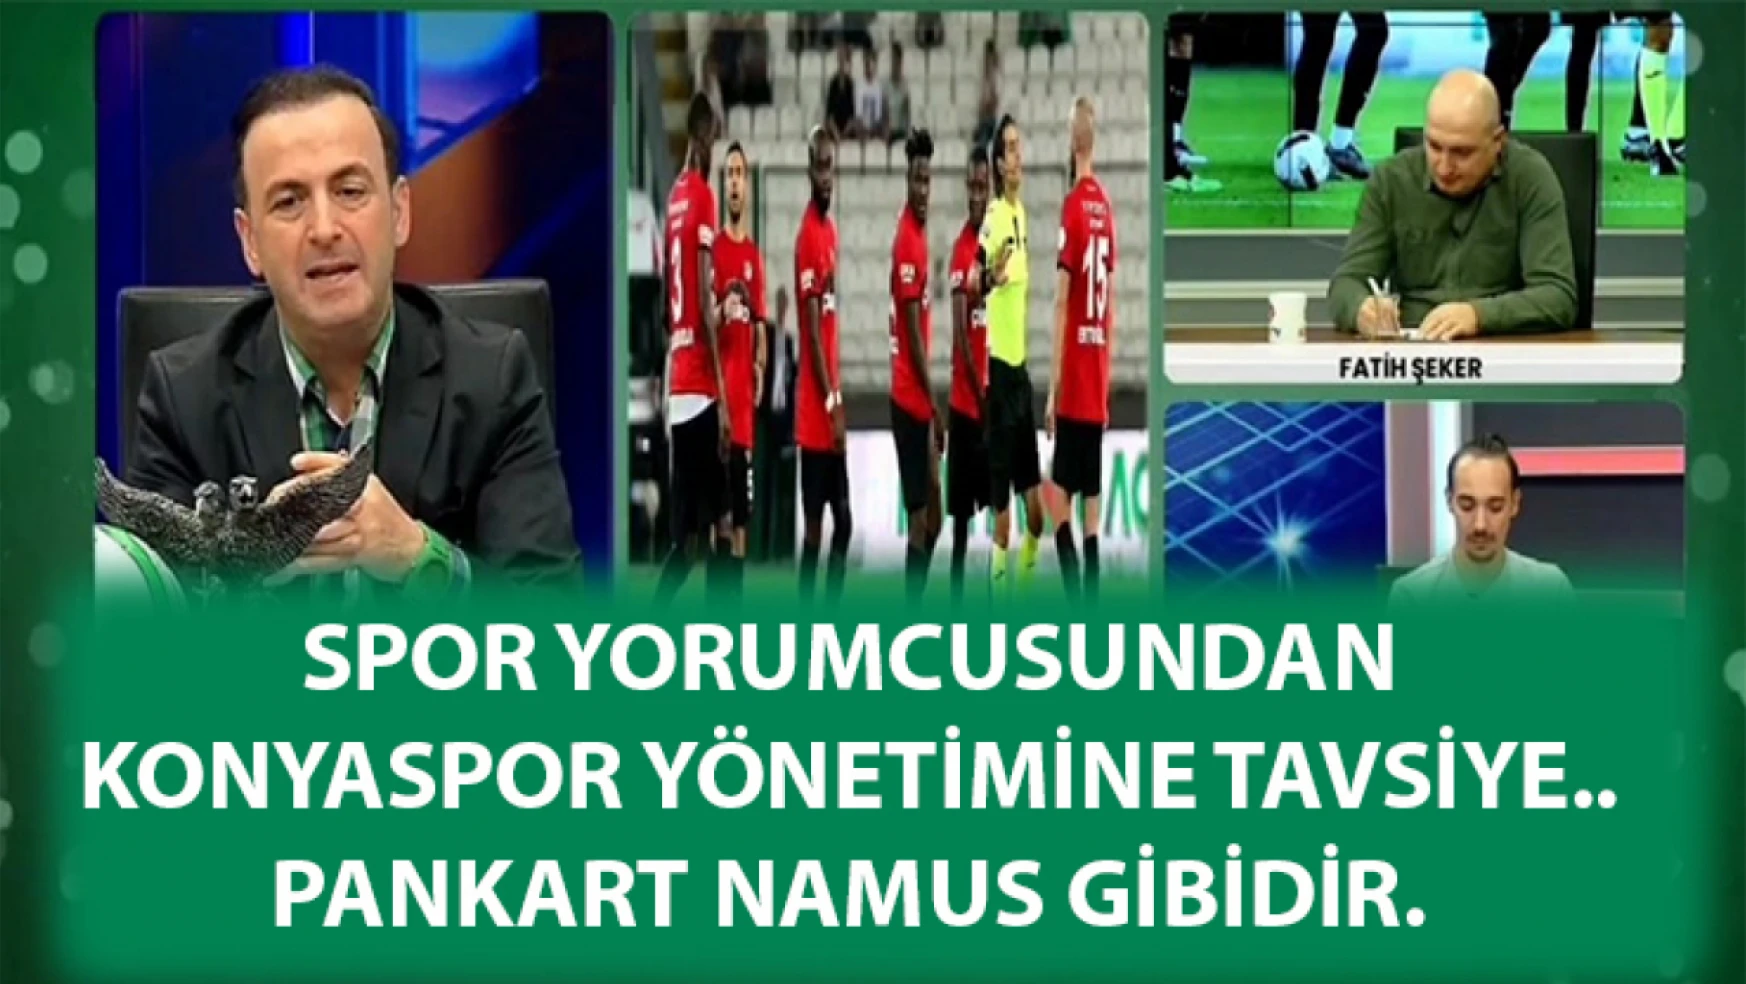 Spor yorumcusundan Konyaspor yönetimine tavsiye.. pankart namus gibidir